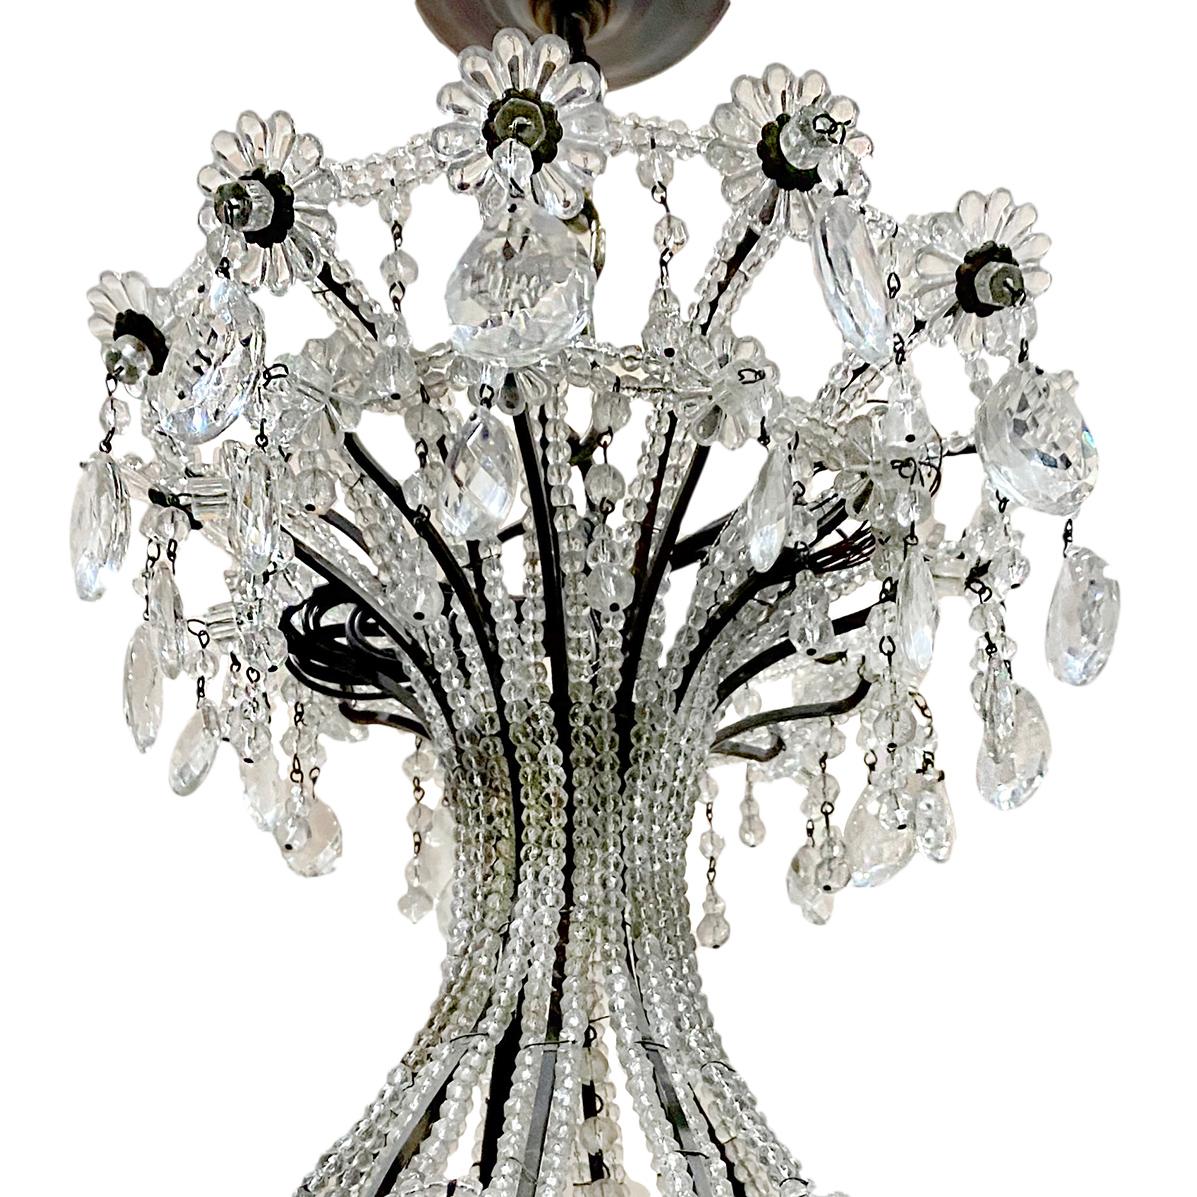 Ein großer französischer Perlenleuchter mit zwölf Lichtern aus der Zeit um 1920 mit Kristalleinsätzen am Korpus und aufgesetzten Kristallblumen.

Abmessungen:
Stromabfall: 46